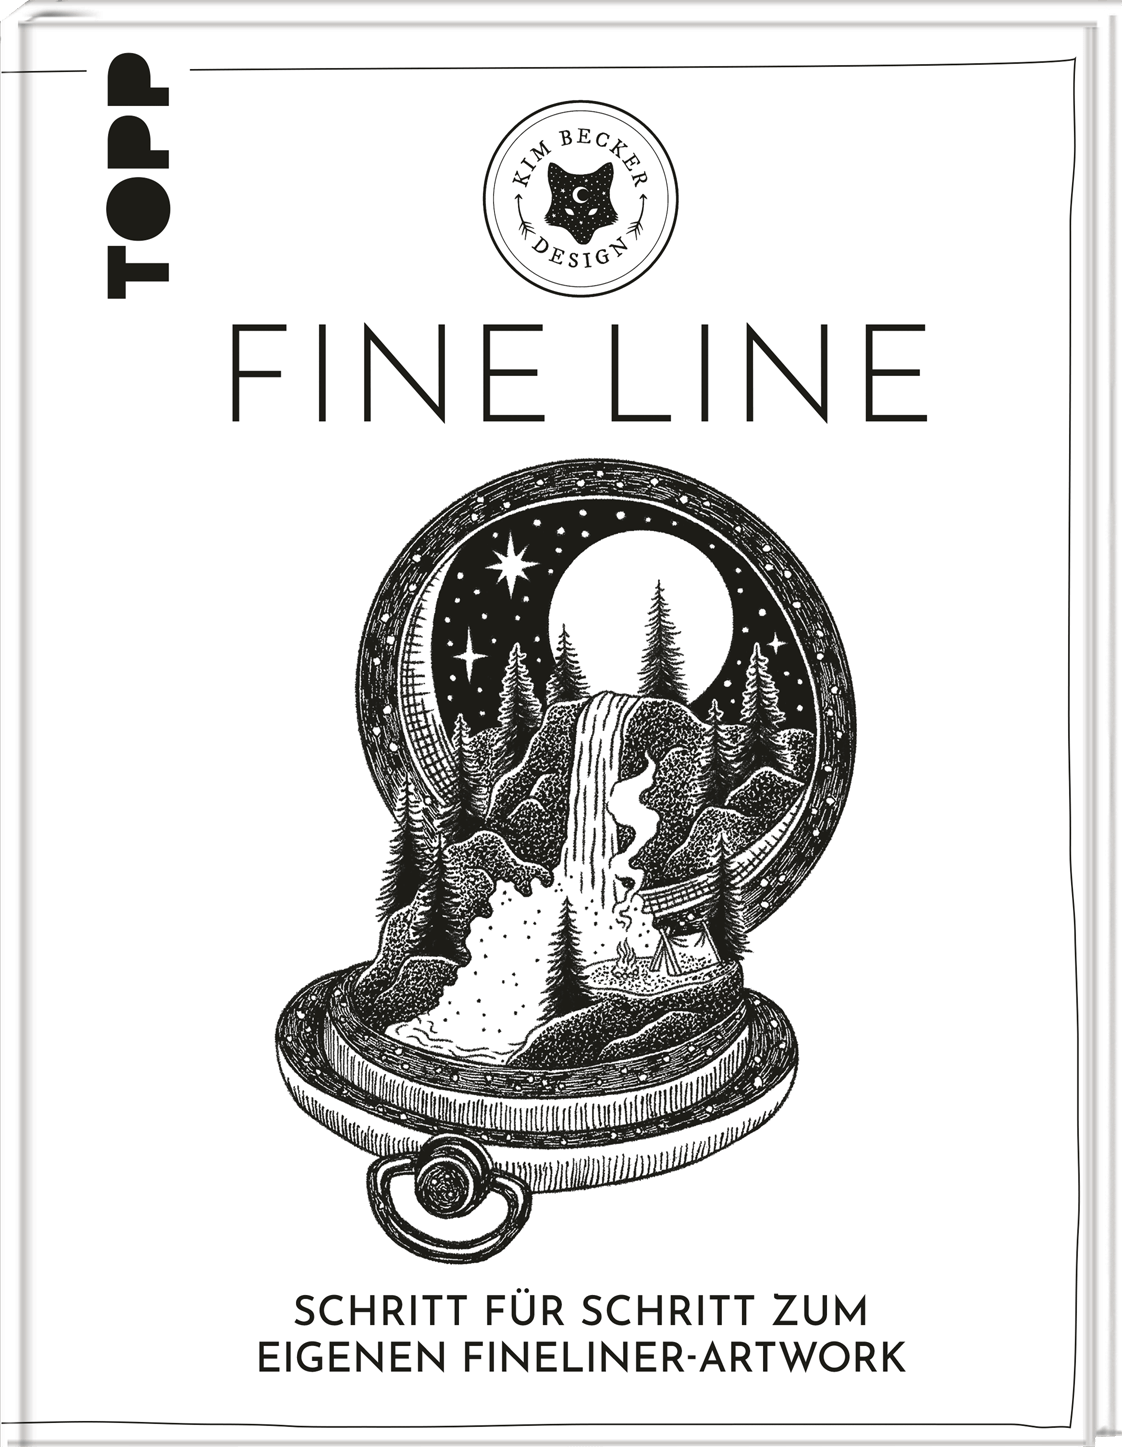 Zeichnen mir Fineliner und dem Fine Line Buch von Kim Becker